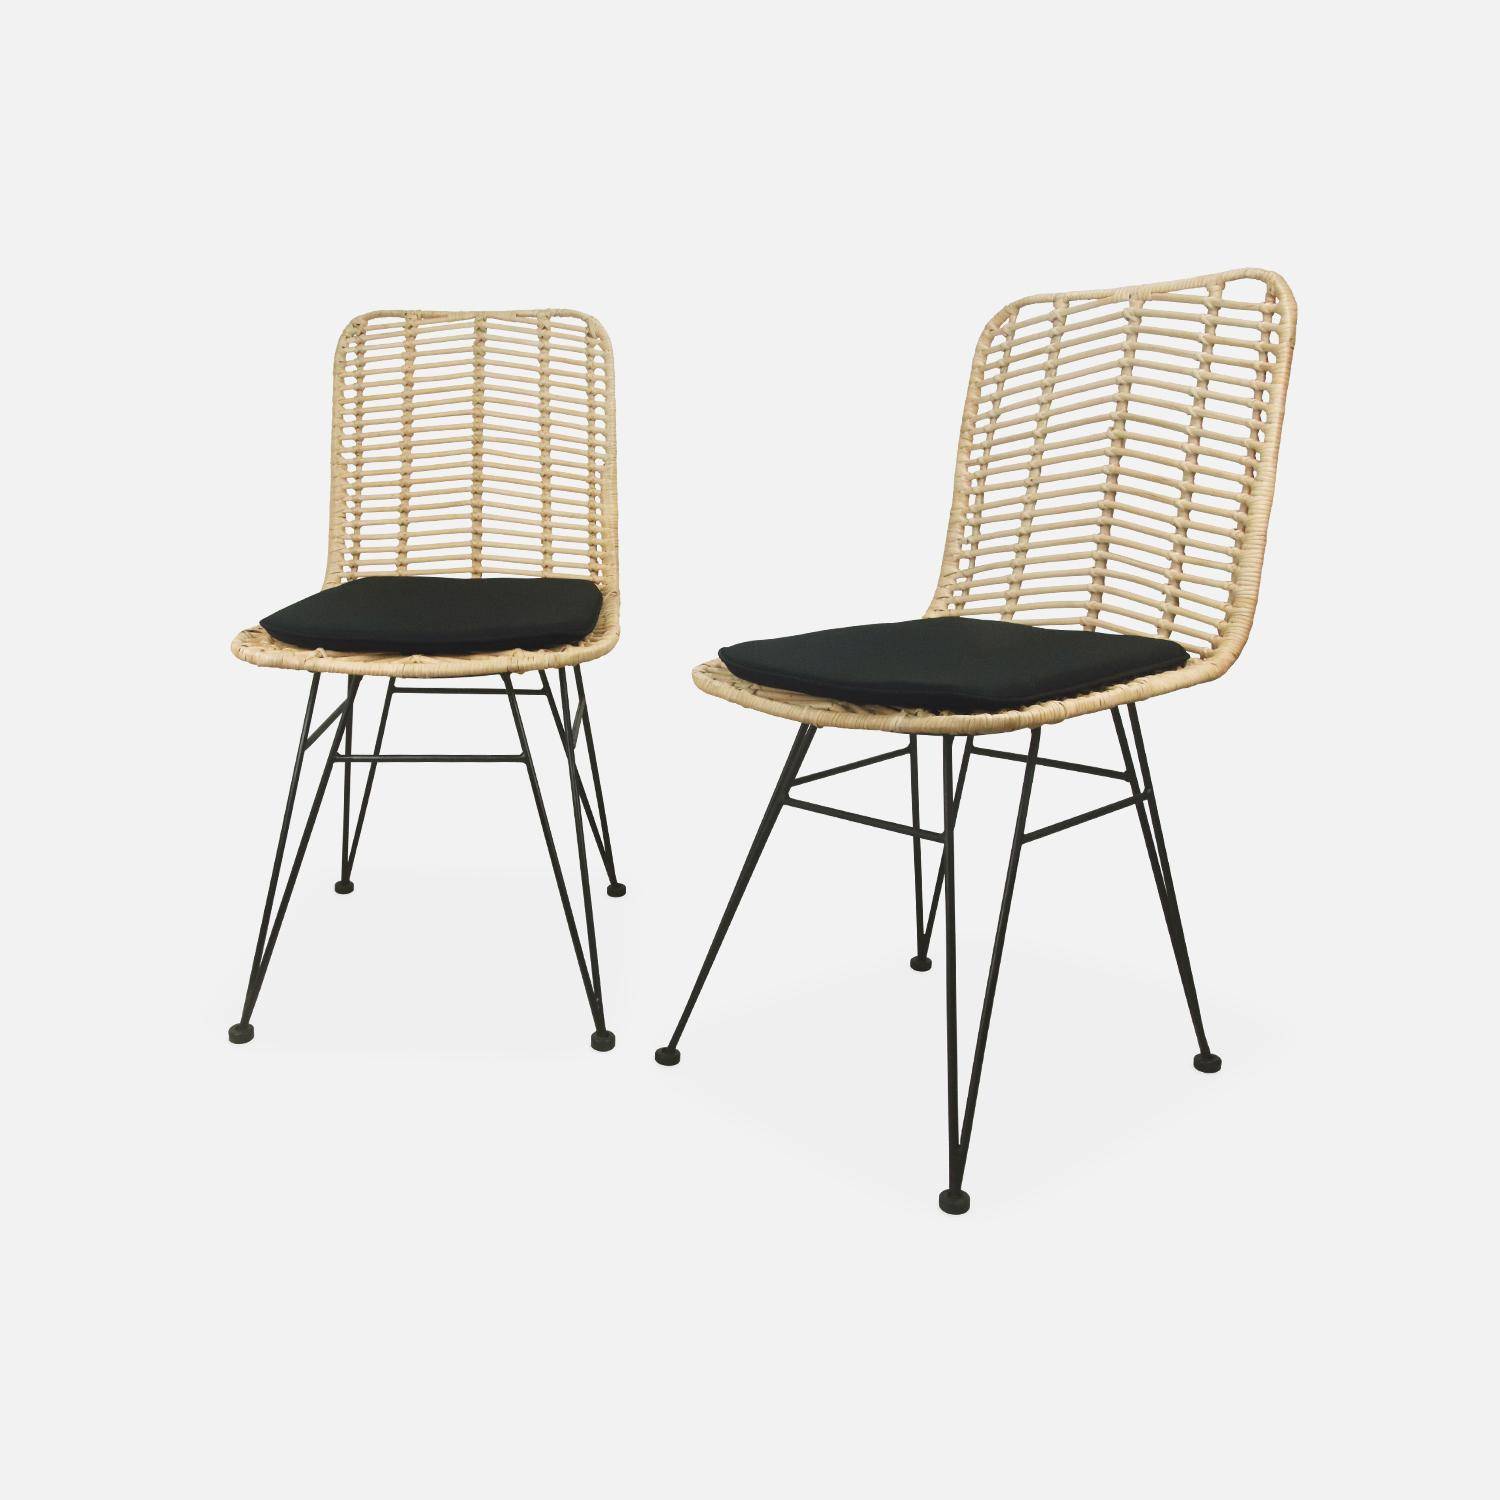 Dos sillas de ratán natural y metal, cojines negros - Cahya Photo3